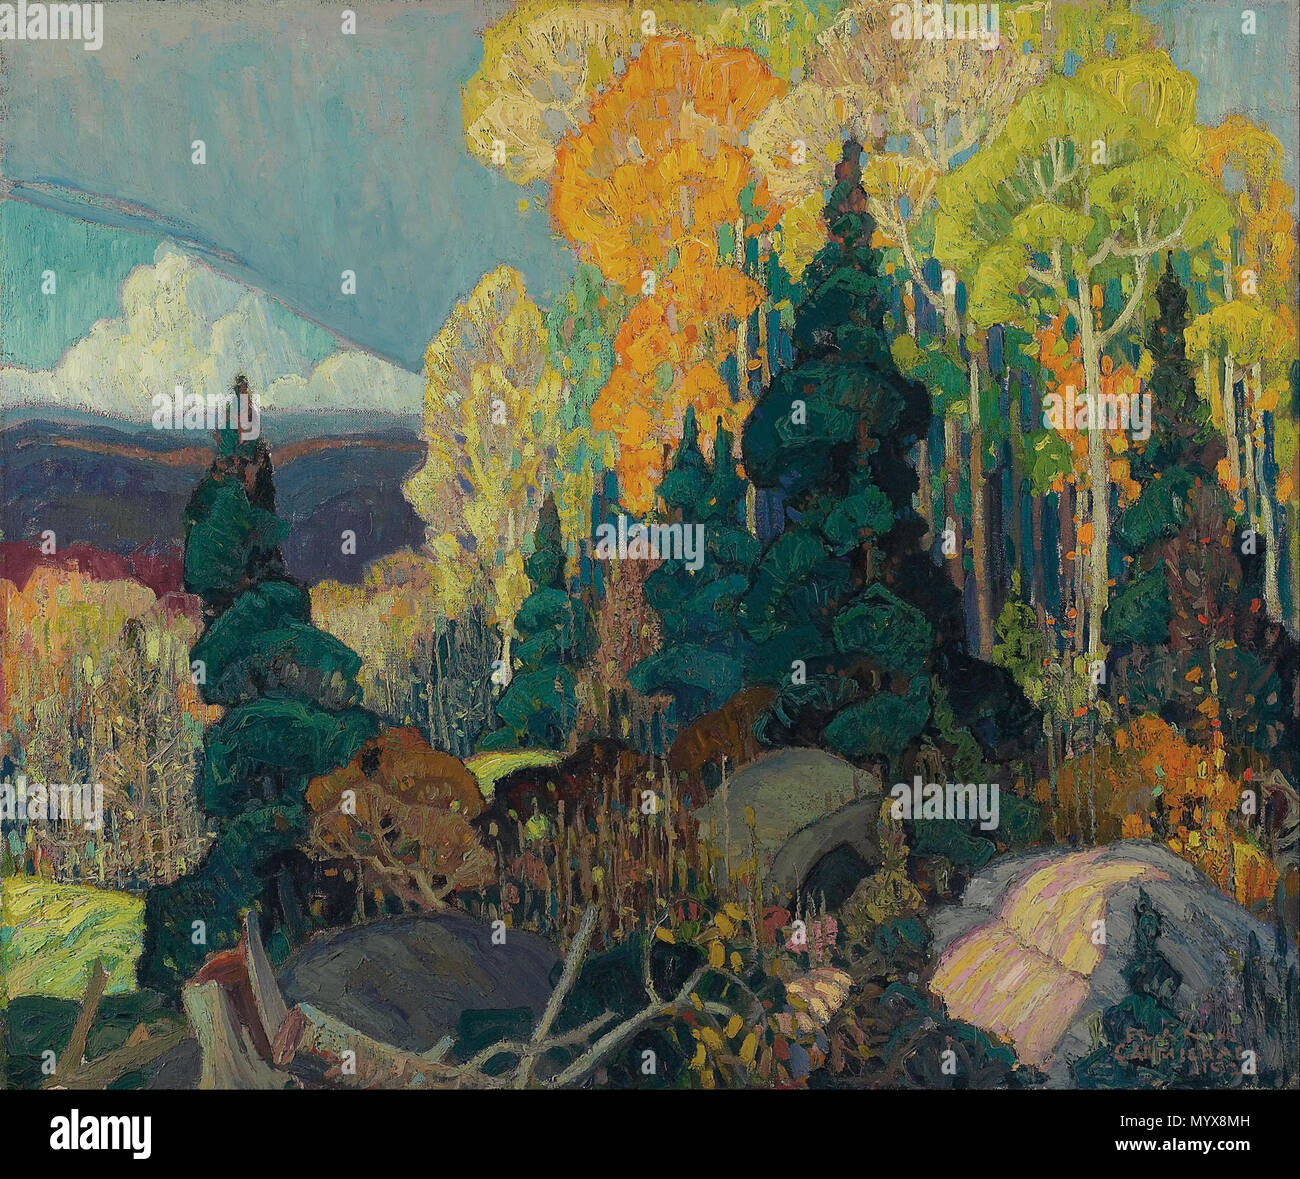 Englisch: Herbst Hang. 1920 2 Franklin Carmichael - Herbst Hang - Google  Kunst Projekt Stockfotografie - Alamy